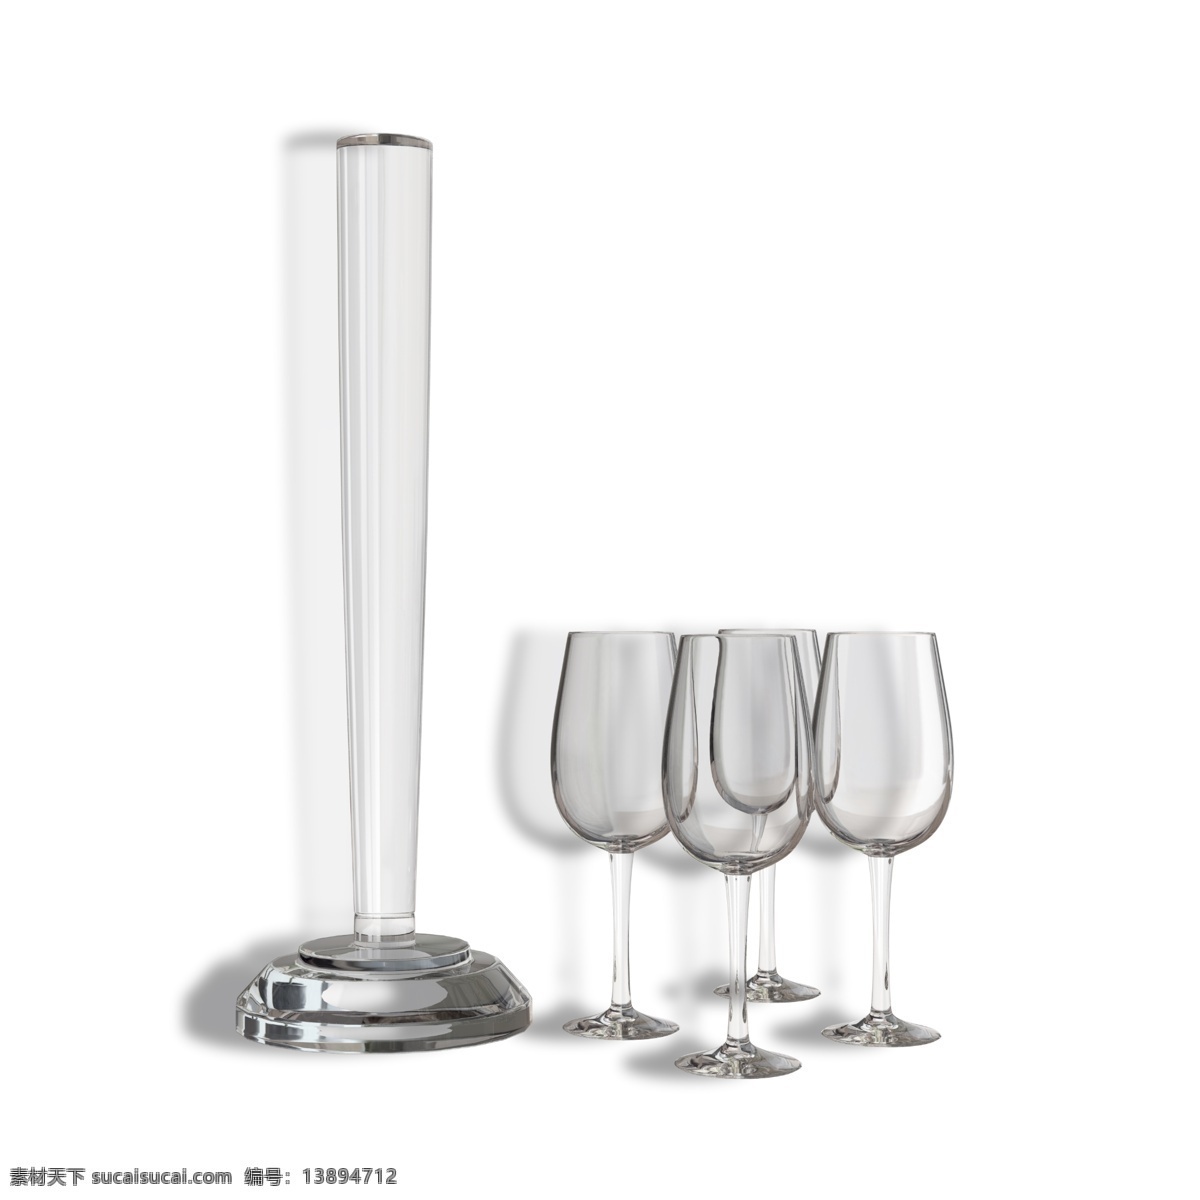 家居用品 玻璃器皿 玻璃 玻璃杯 杯子 透明杯子 高脚杯 红酒杯 餐具 餐厅用具 酒具 容器